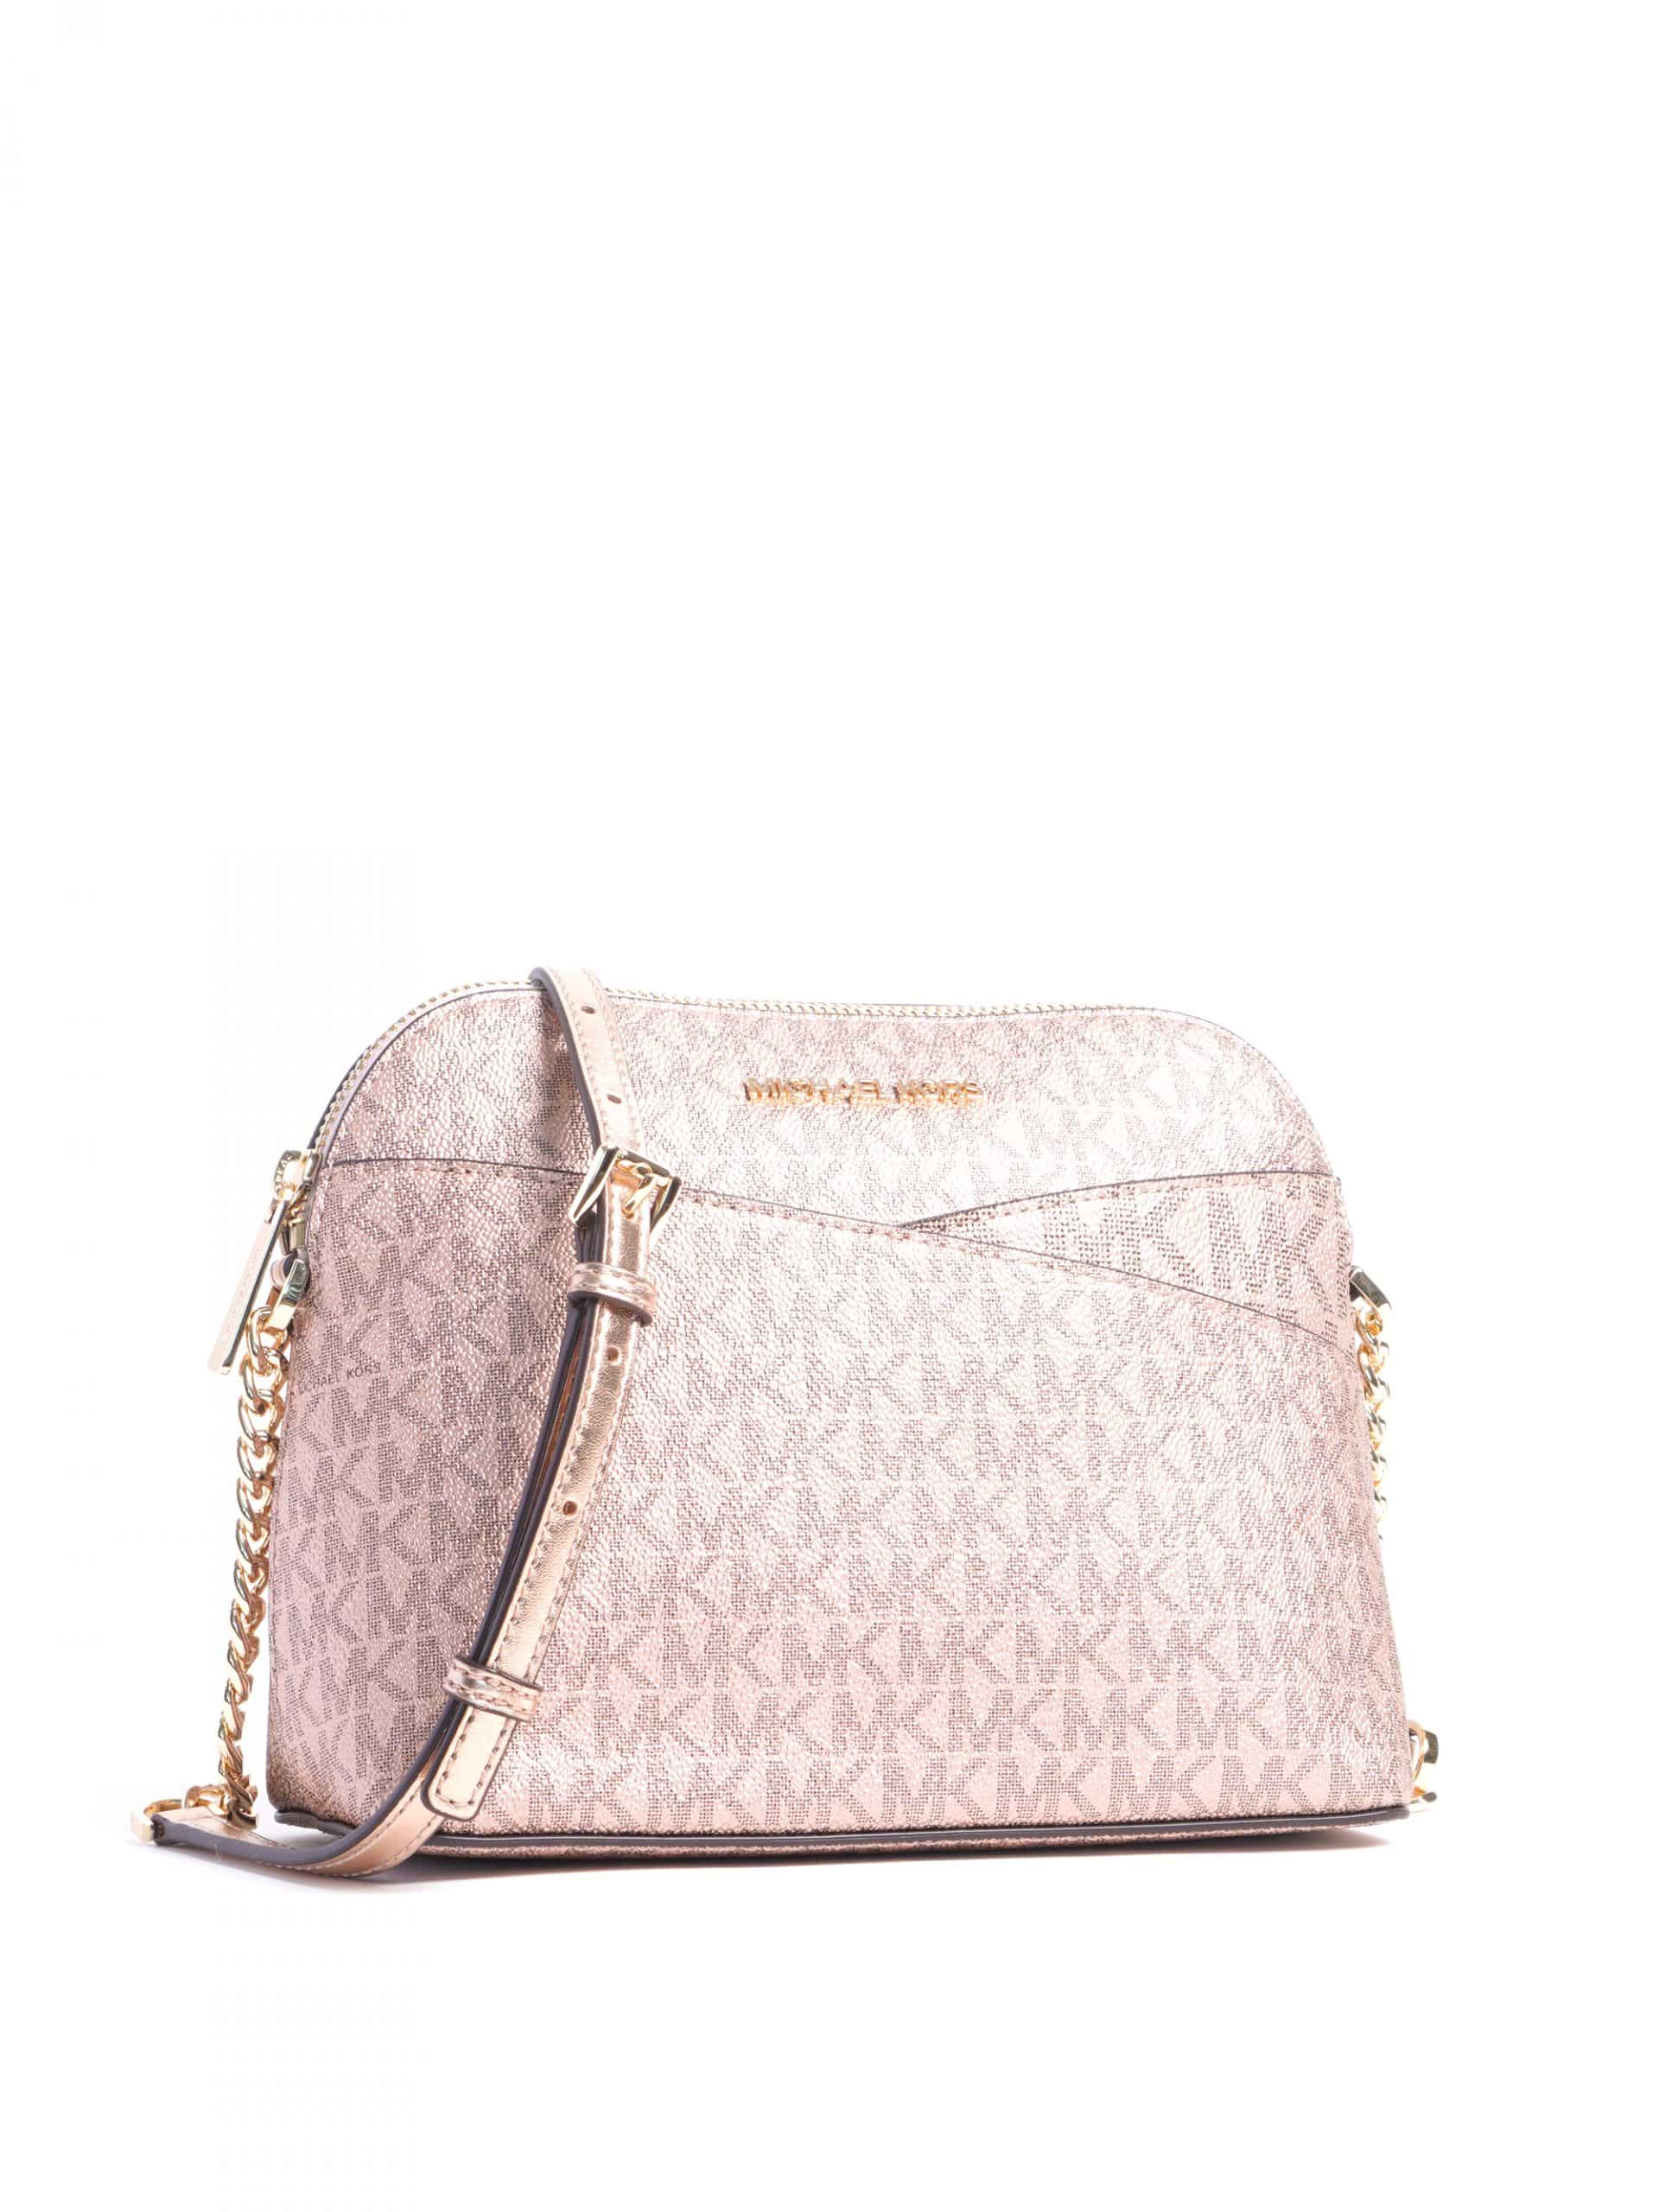 Michael Kors Messenger Satchel Pink/rose Gold Options Wallet Bag or  Bag+wallet Medium Pink/Rose Gold Convertible Handbag Rt. $398 - Michael Kors  bag - | Fash Brands